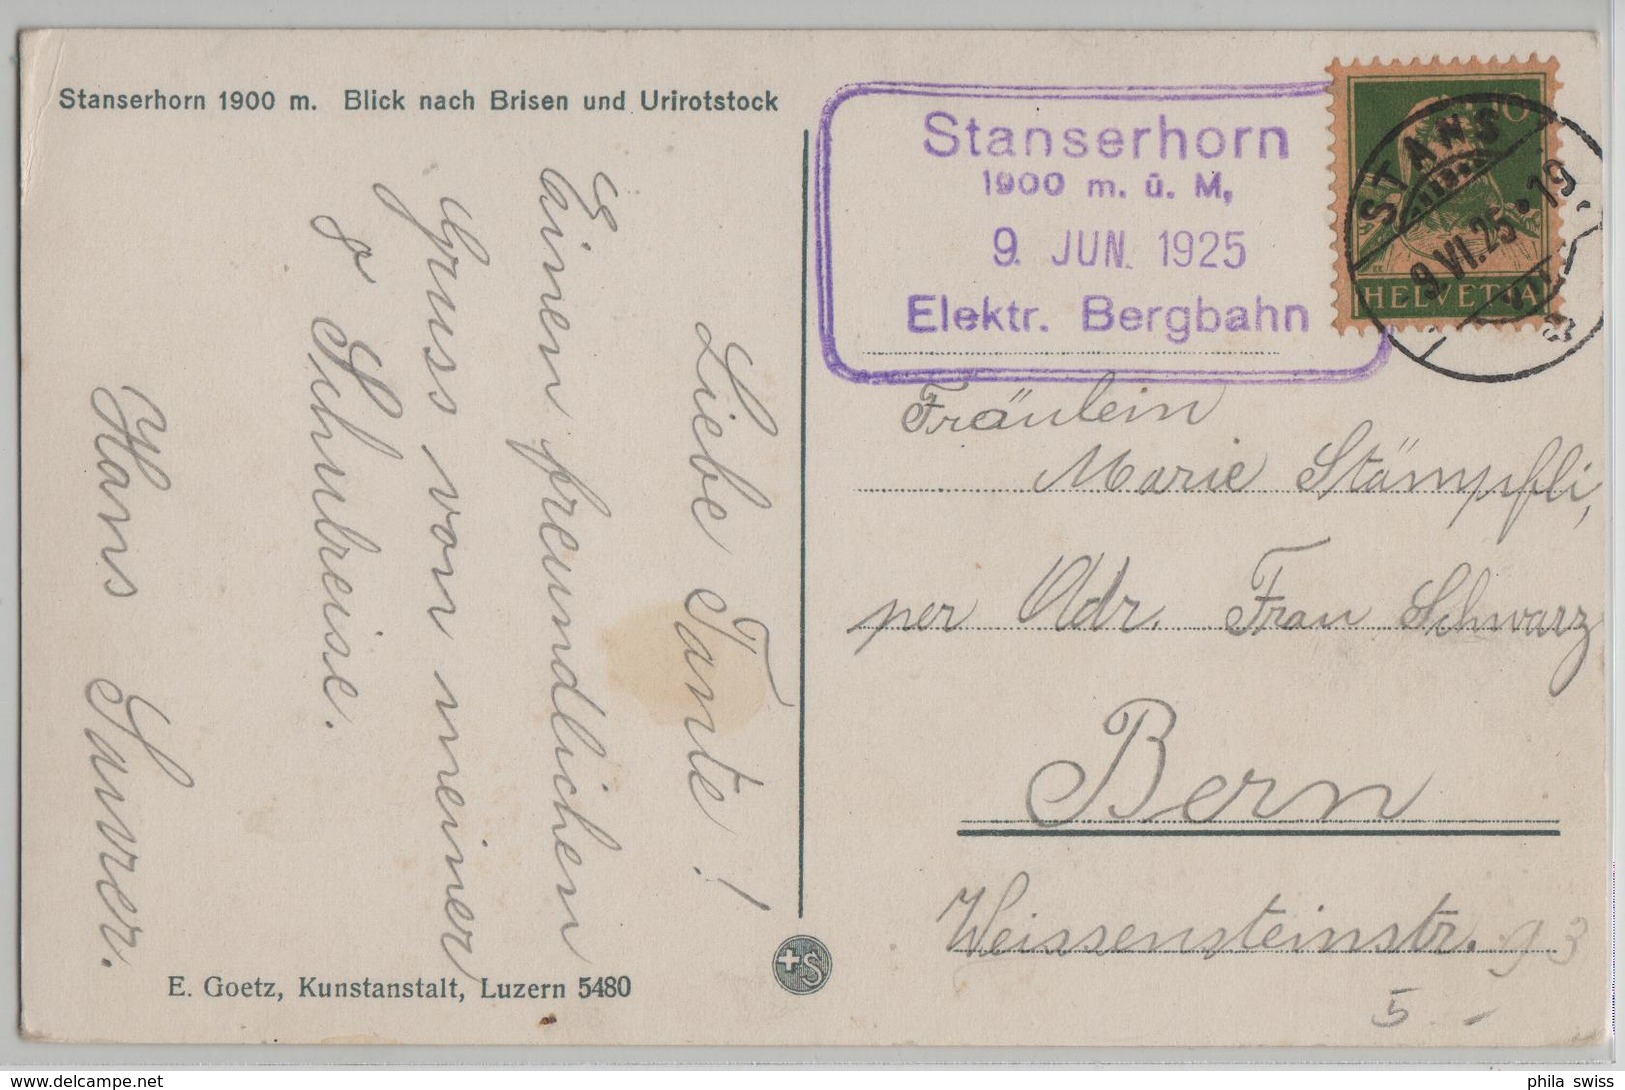 Stanserhorn - Blick Nach Brisen Und Urirotstock .- Animee - Photo: E. Goetz - Stans